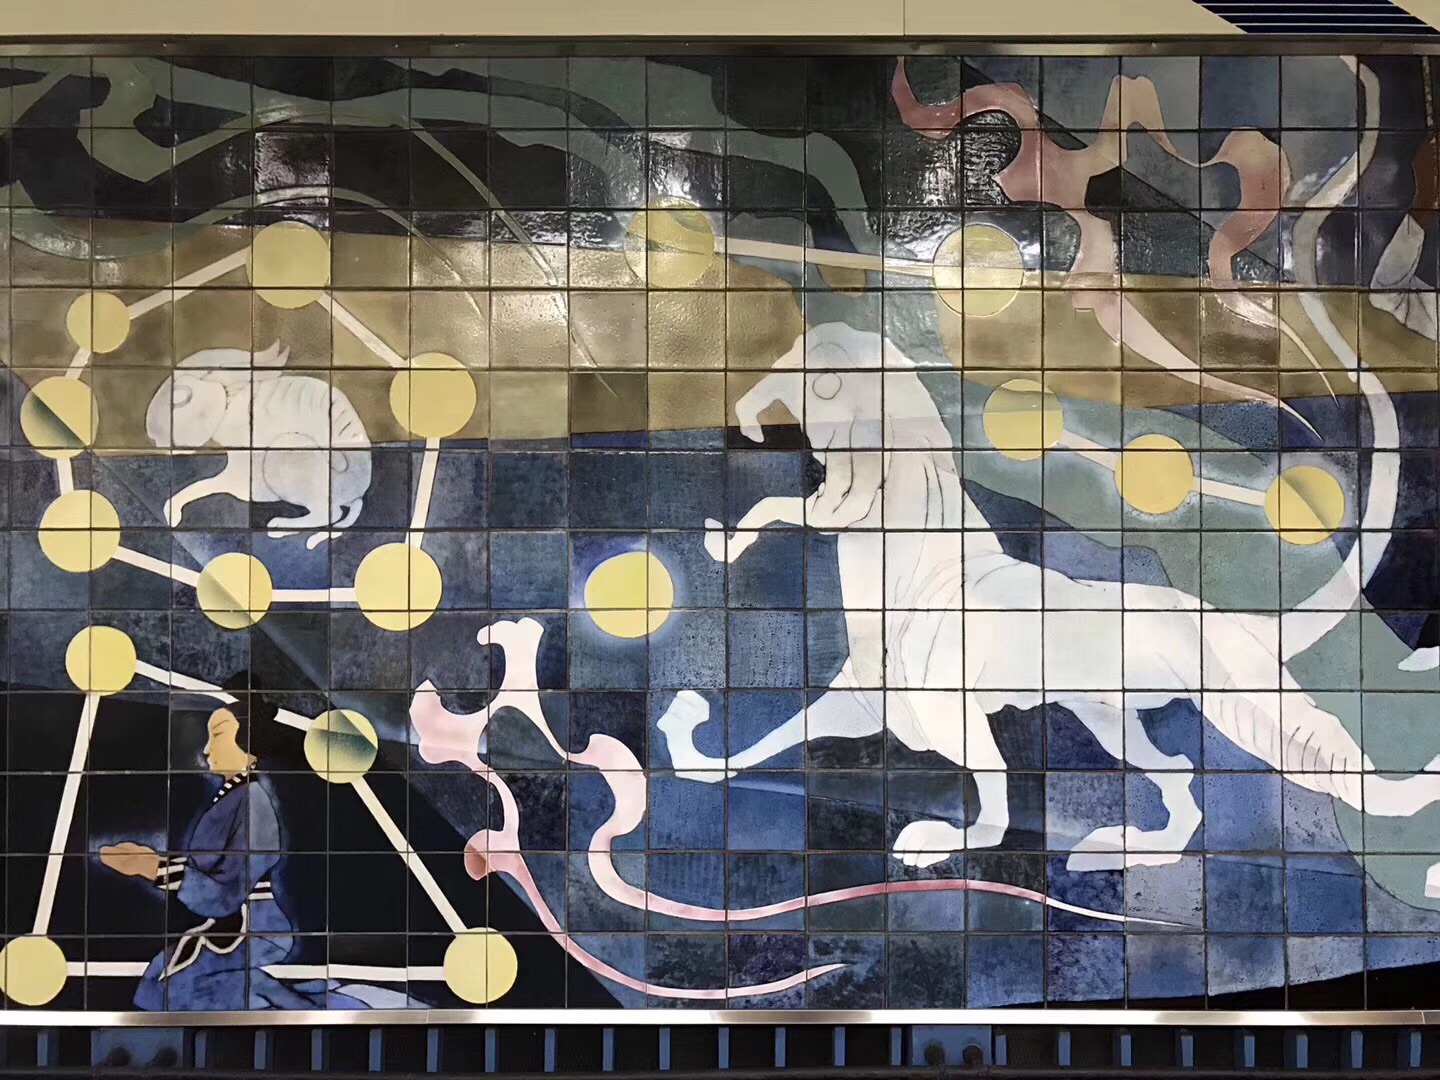 北京地铁站壁画图片